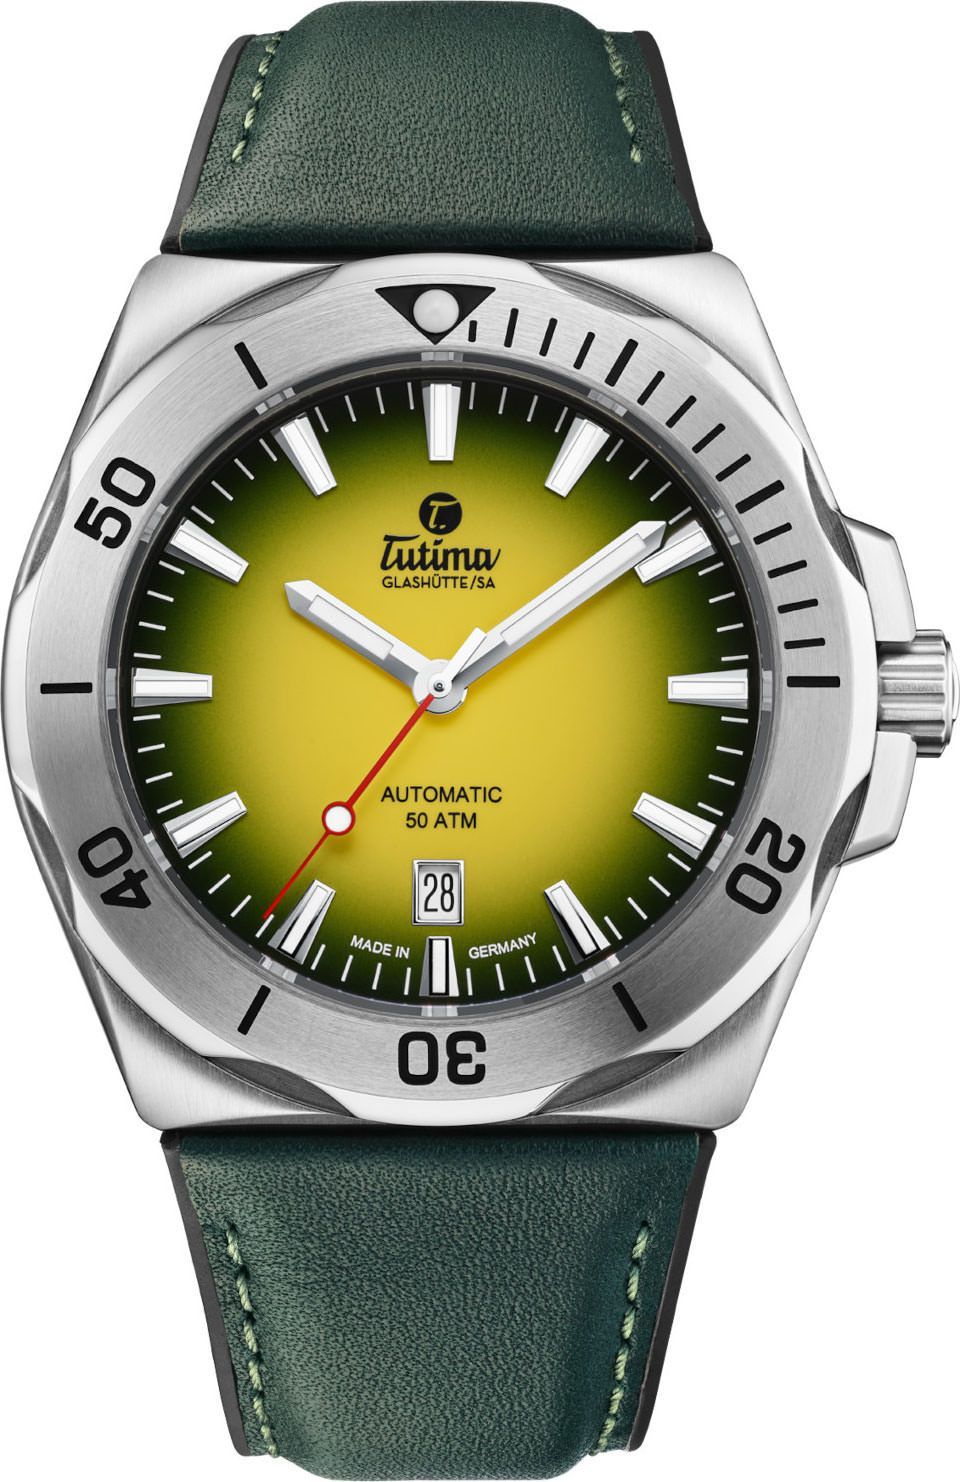 Tutima Glashütte Seven Seas S 44 mm Watch in Yellow Dial For Men - 1